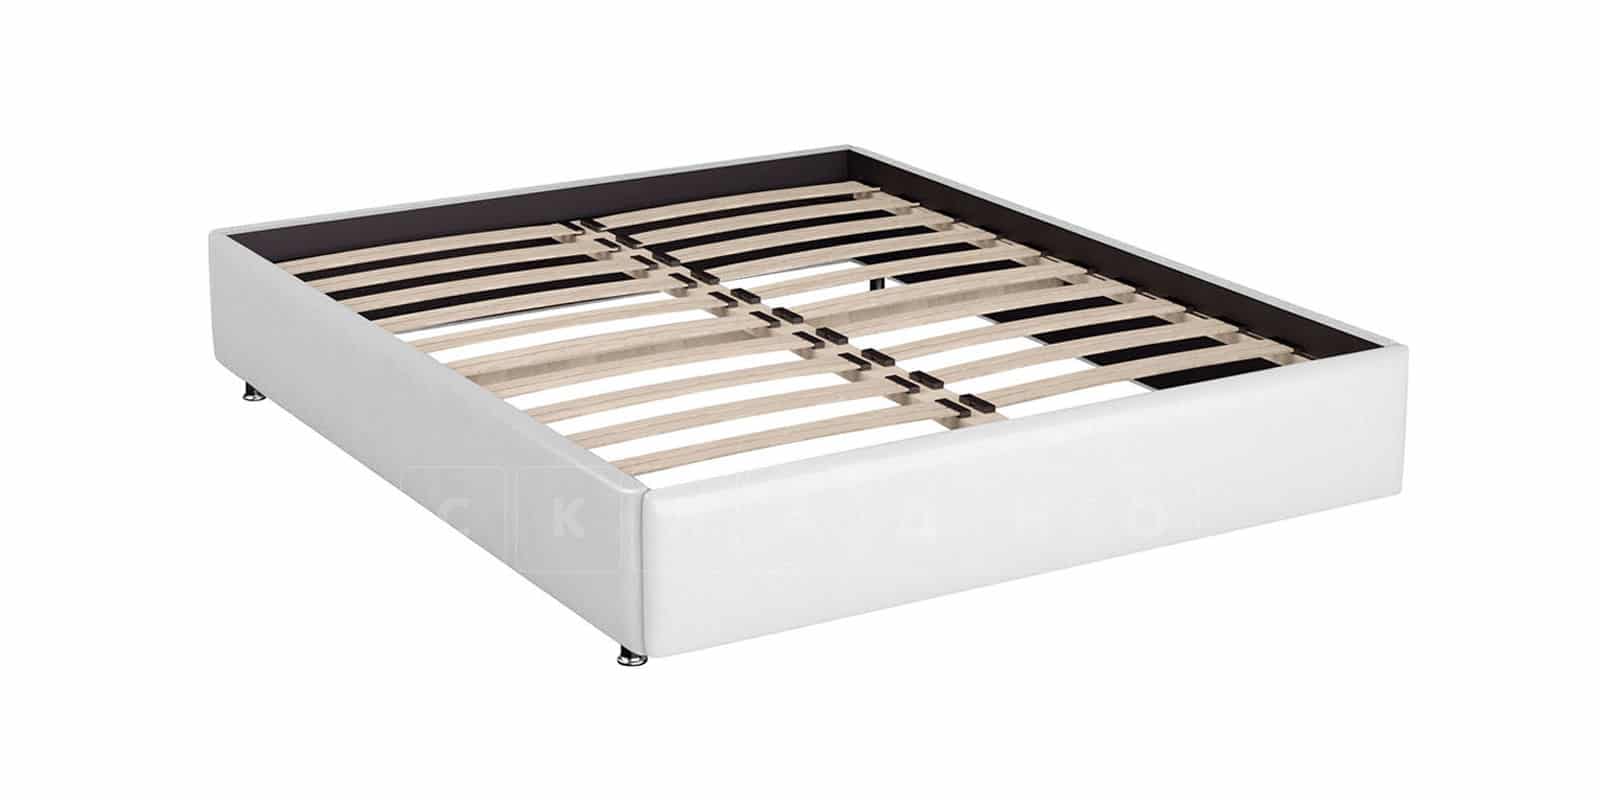 Мягкая кровать Малибу 160см экокожа белого цвета вариант 1-2 фото 6 | интернет-магазин Складно